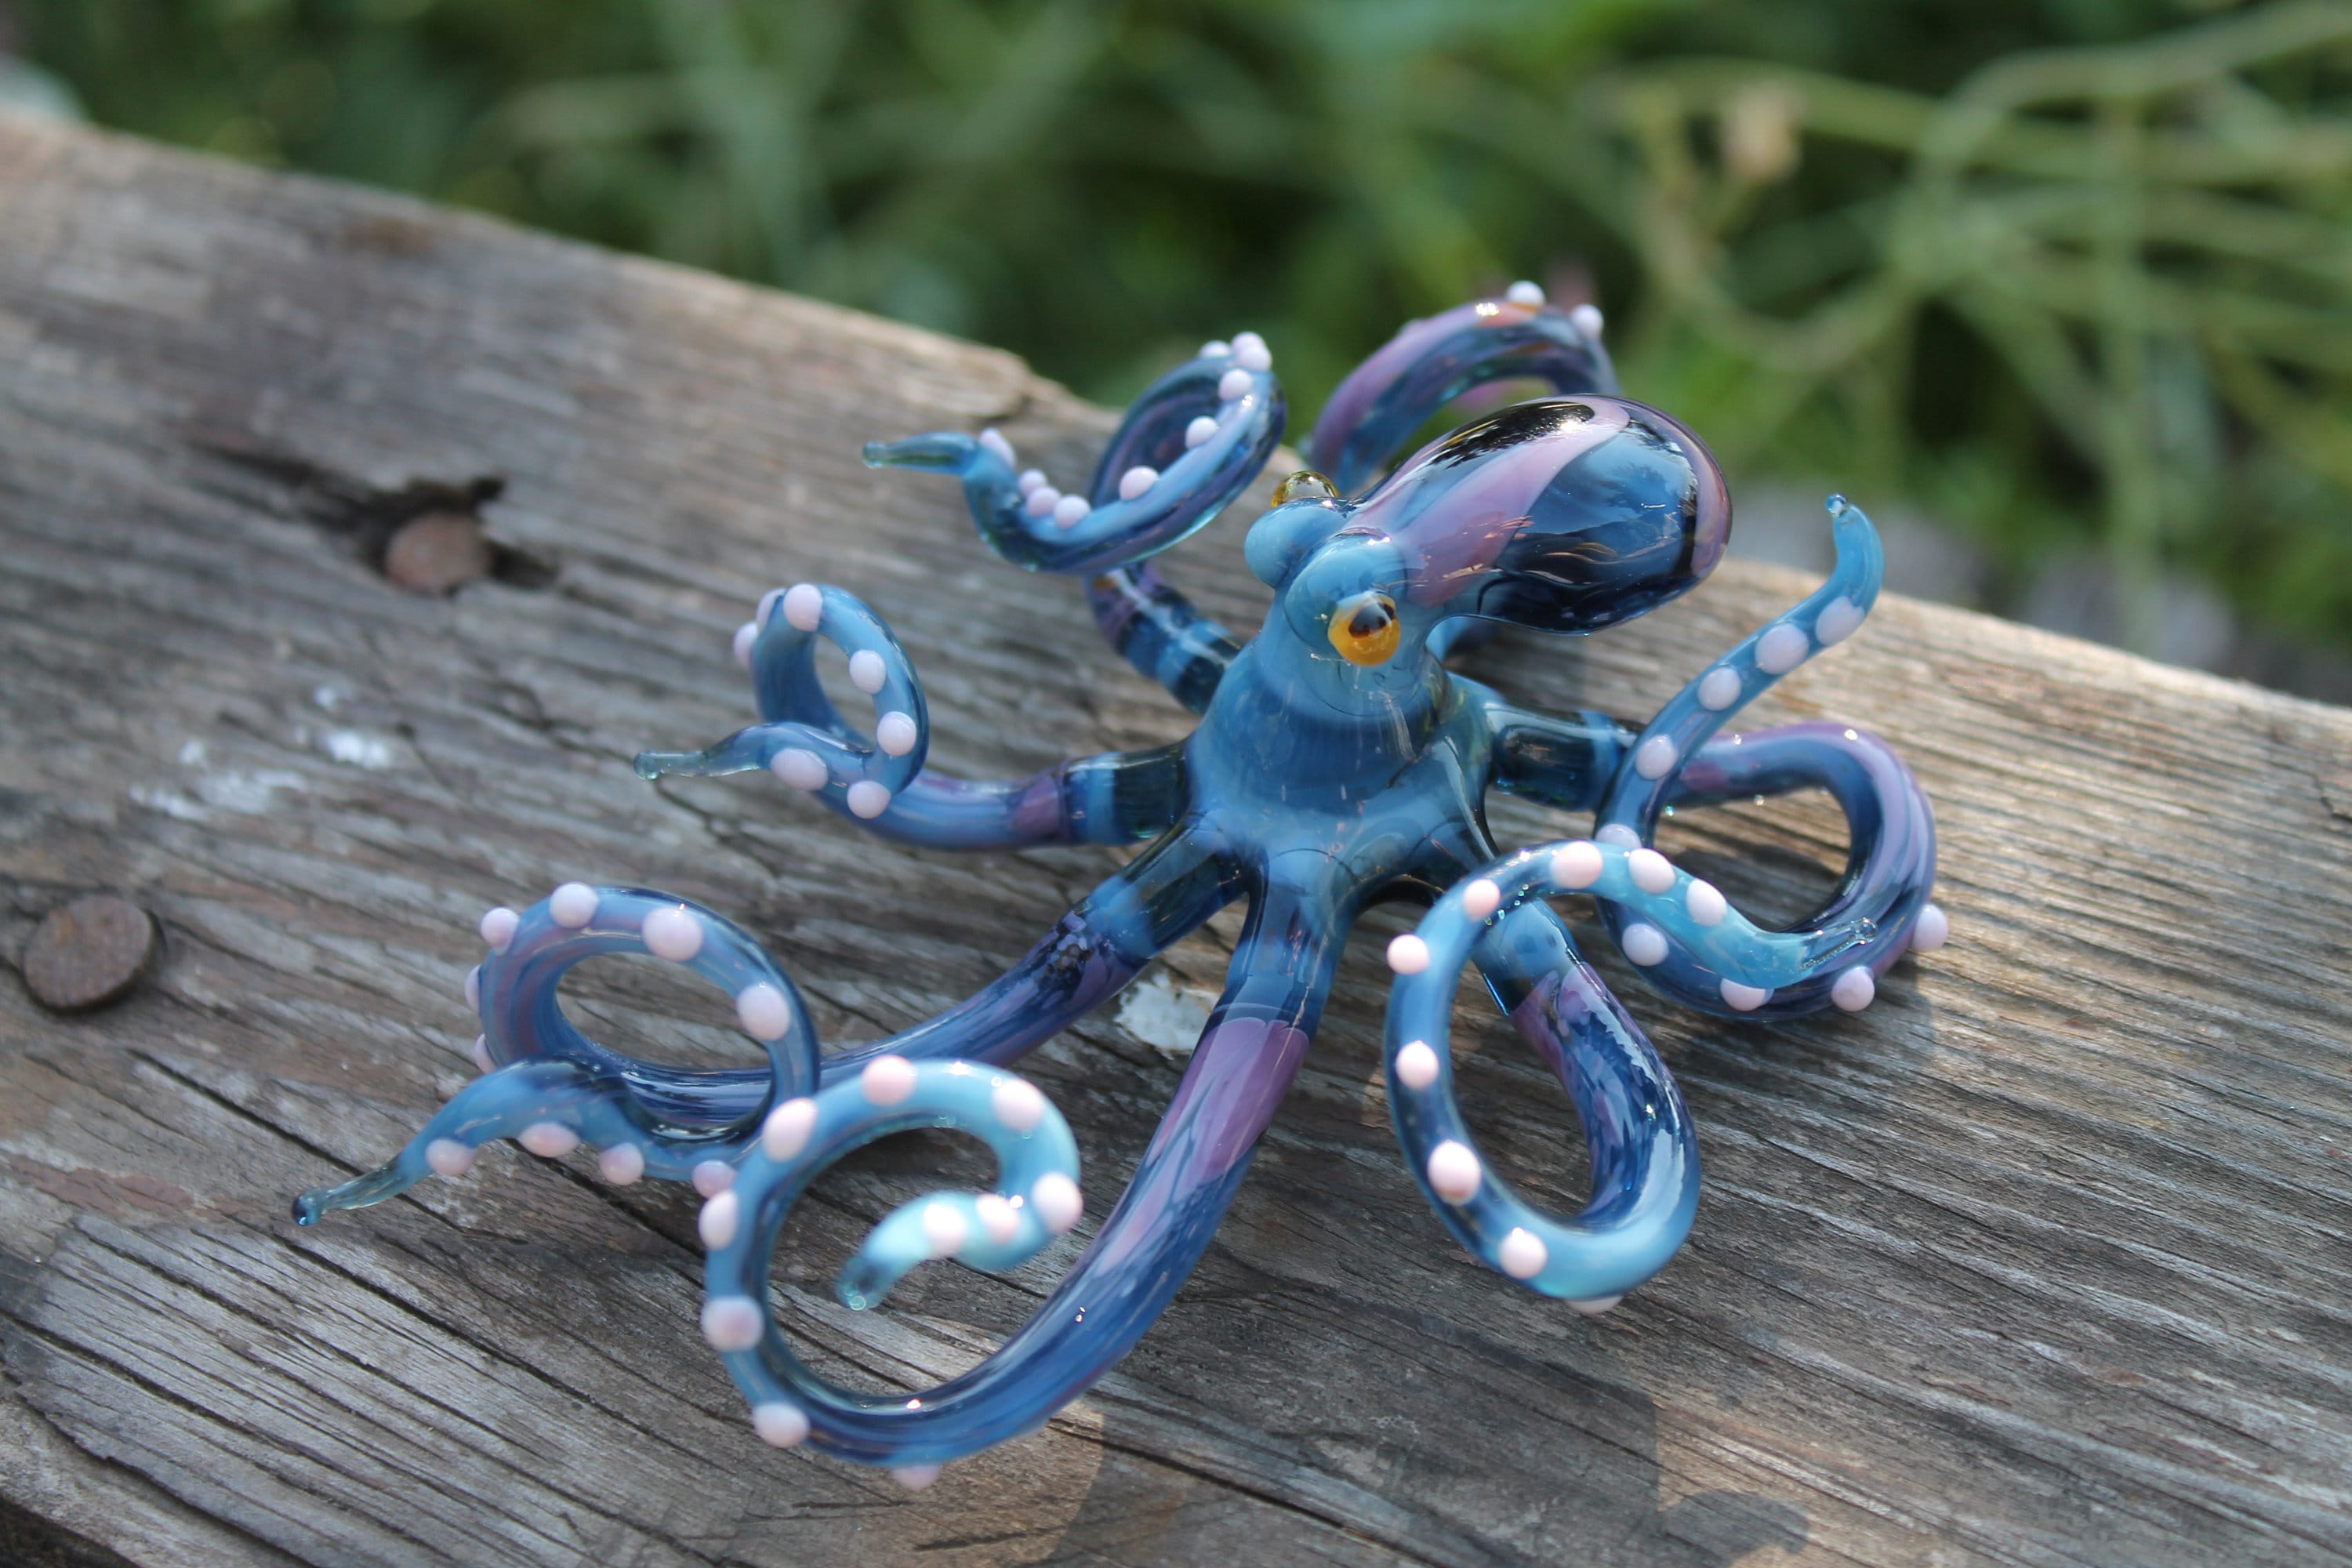 By Ganz Miniature Green Glass Octopus Figure